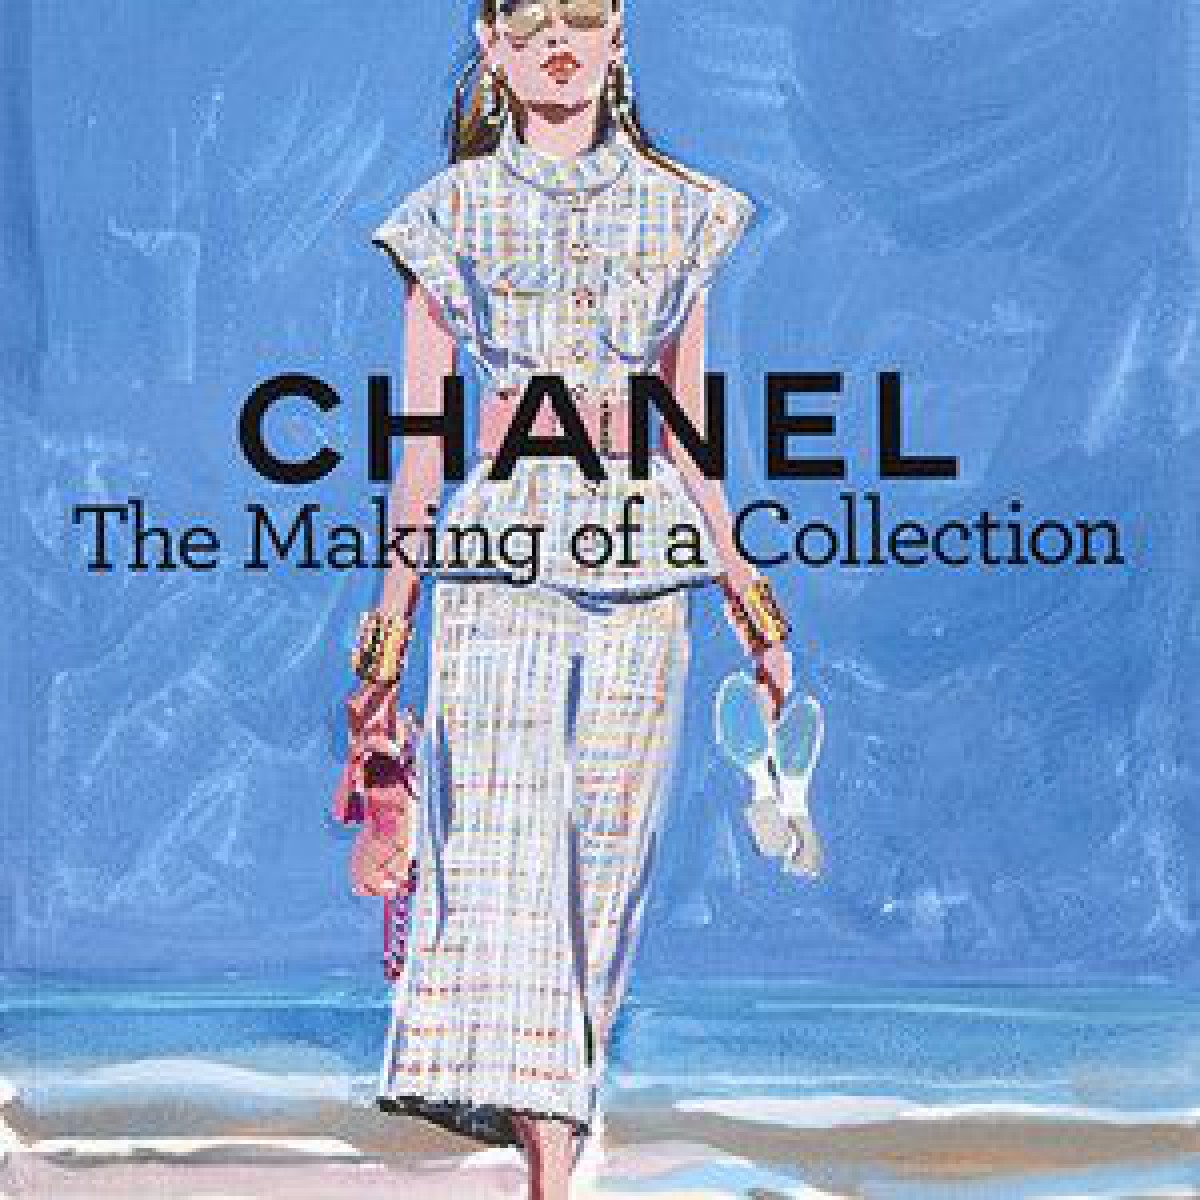 シャネルの1年間をイラストで表現したヴィジュアルブック「CHANEL The Making of a Collection」に注目